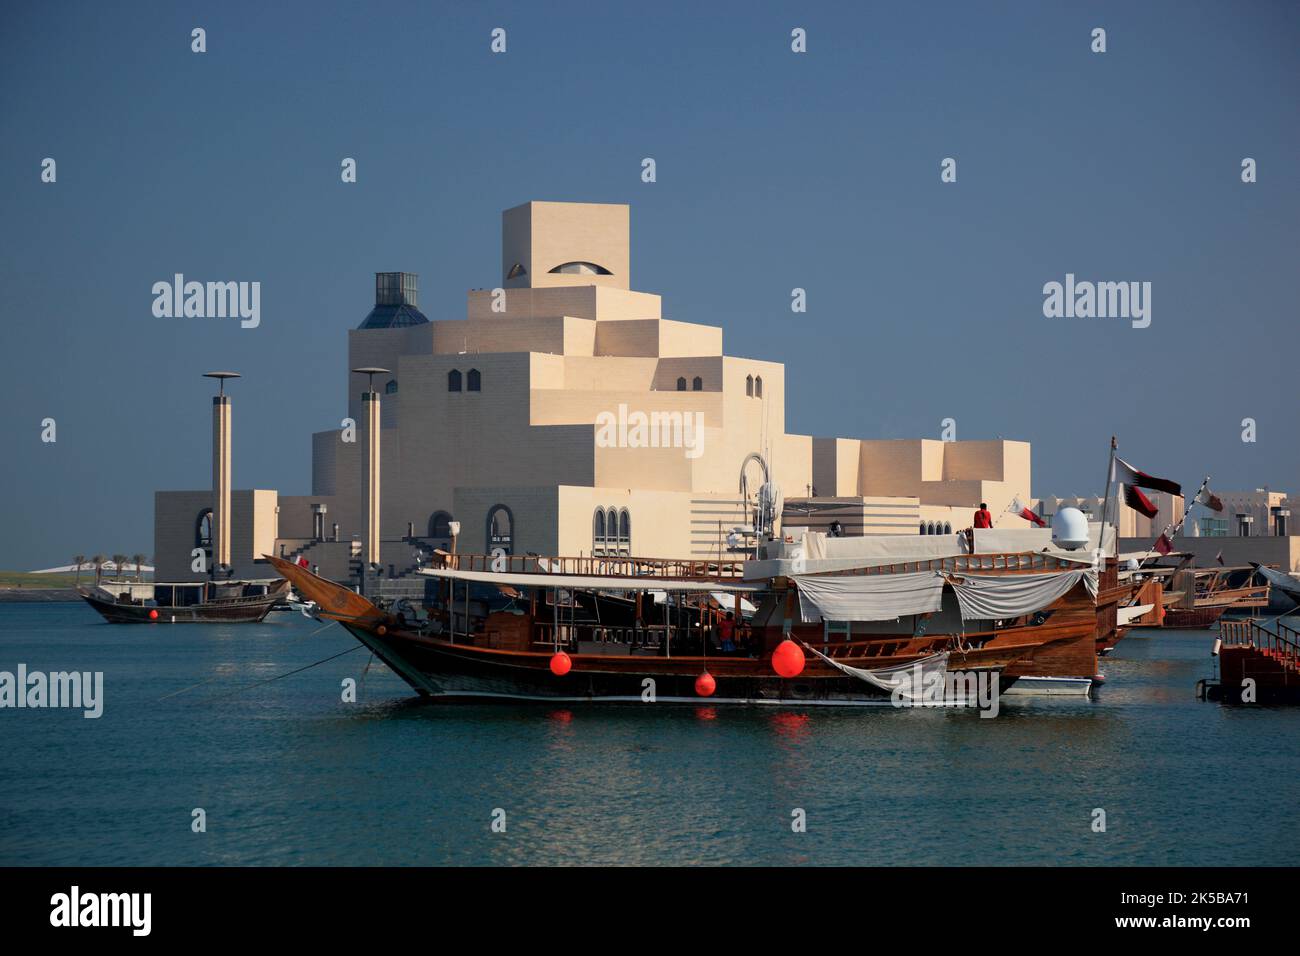 Museum für islamische Kunst, Doha, gilt als bedeutenstes Museum für islamische Kunst in Arabien, Wahrzeichen der Stadt Doha, Qatar, Katar Stock Photo